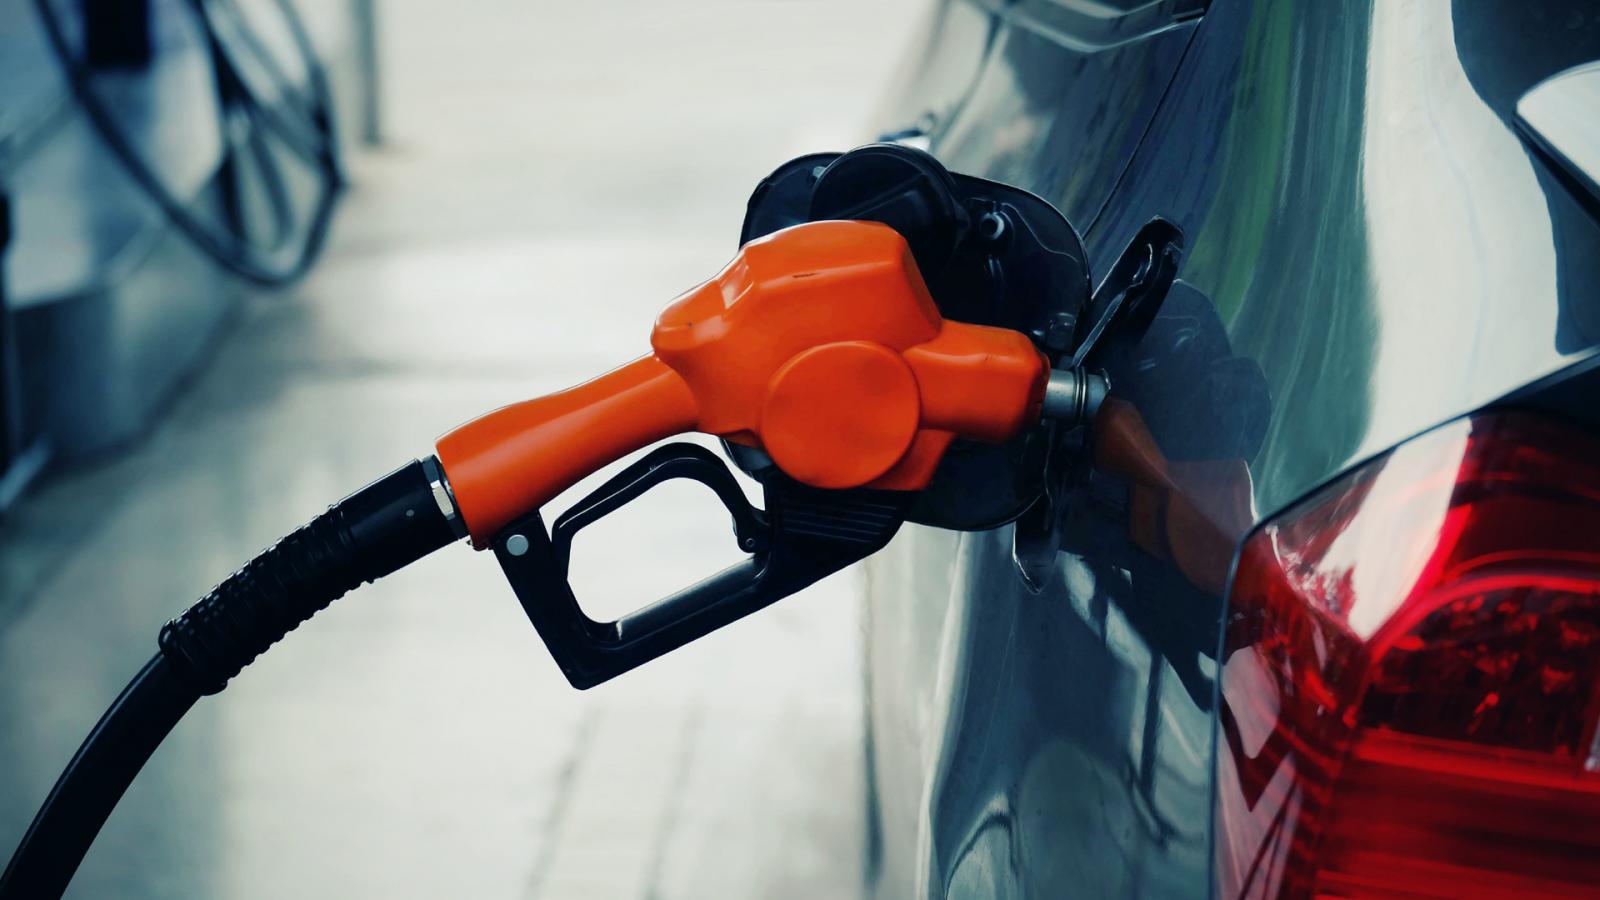 Νοθεία βενζίνης: Πολλοί και ίσως μη ανιχνεύσιμοι οι διαλύτες - Οι ζημιές που προκαλούν και τι μπορούμε να κάνουμε